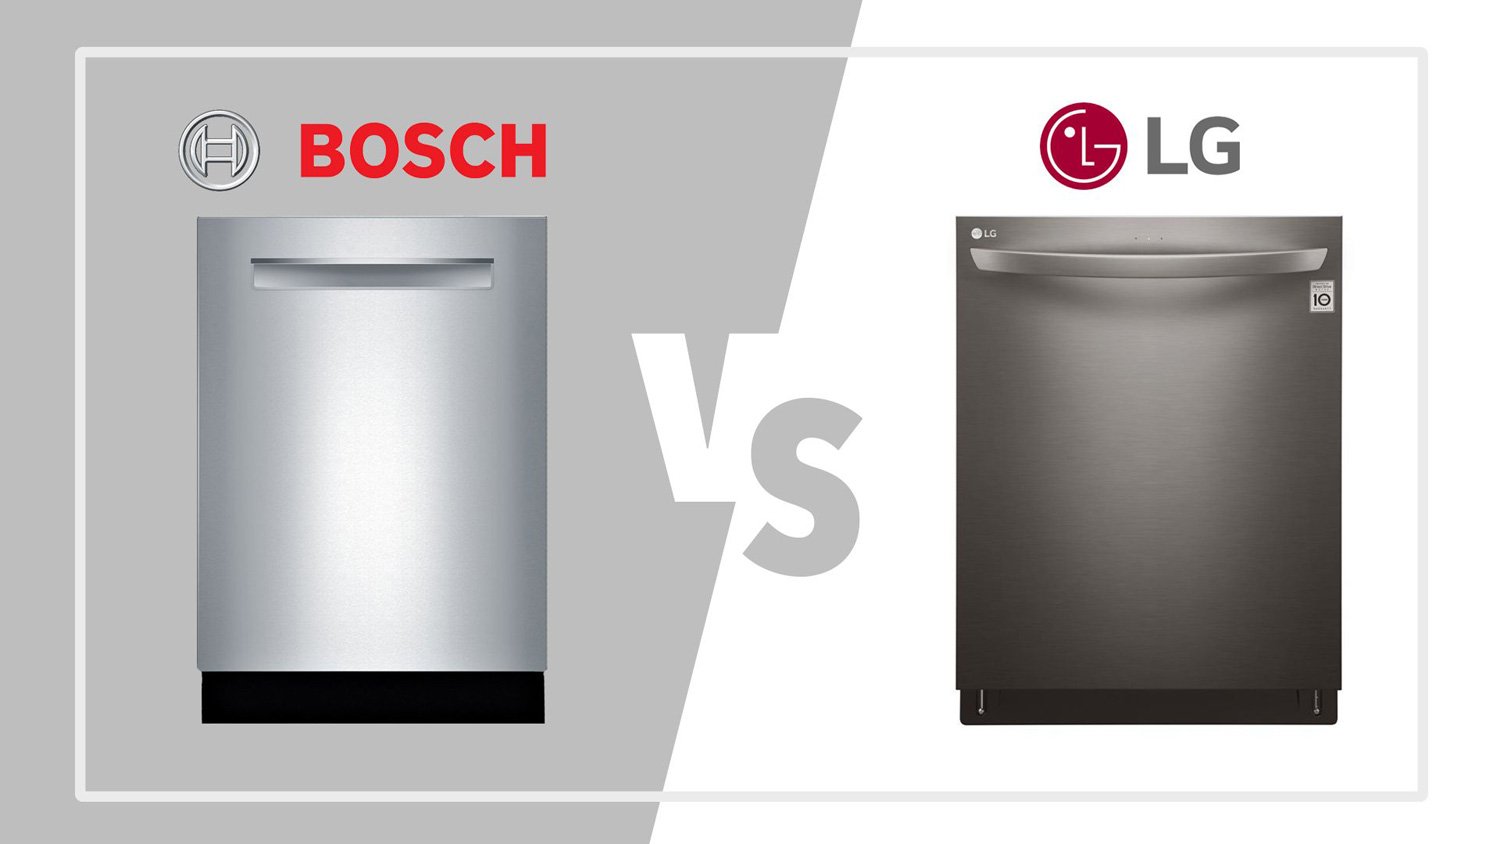 تفاوت ماشین ظرفشویی های ال جی و بوشو سامسونگ